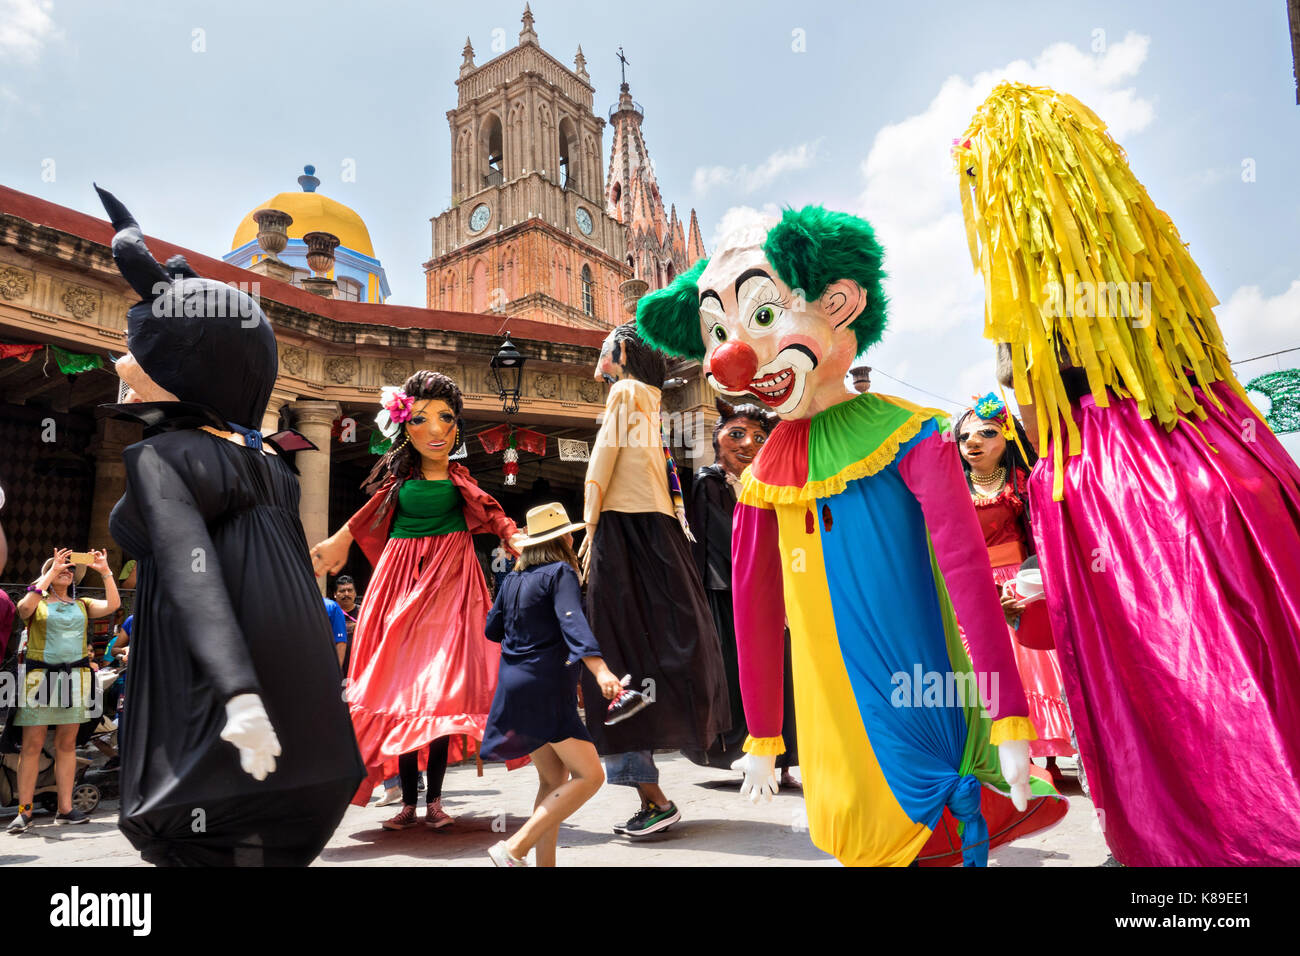 Riesige Pappmaché-Puppen namens Mojigangas tanzen vor der Kirche Parroquia de San Miguel Arcangel während einer Kinderparade, die den mexikanischen Unabhängigkeitstag feiert 17. September 2017 in San Miguel de Allende, Mexiko. Stockfoto